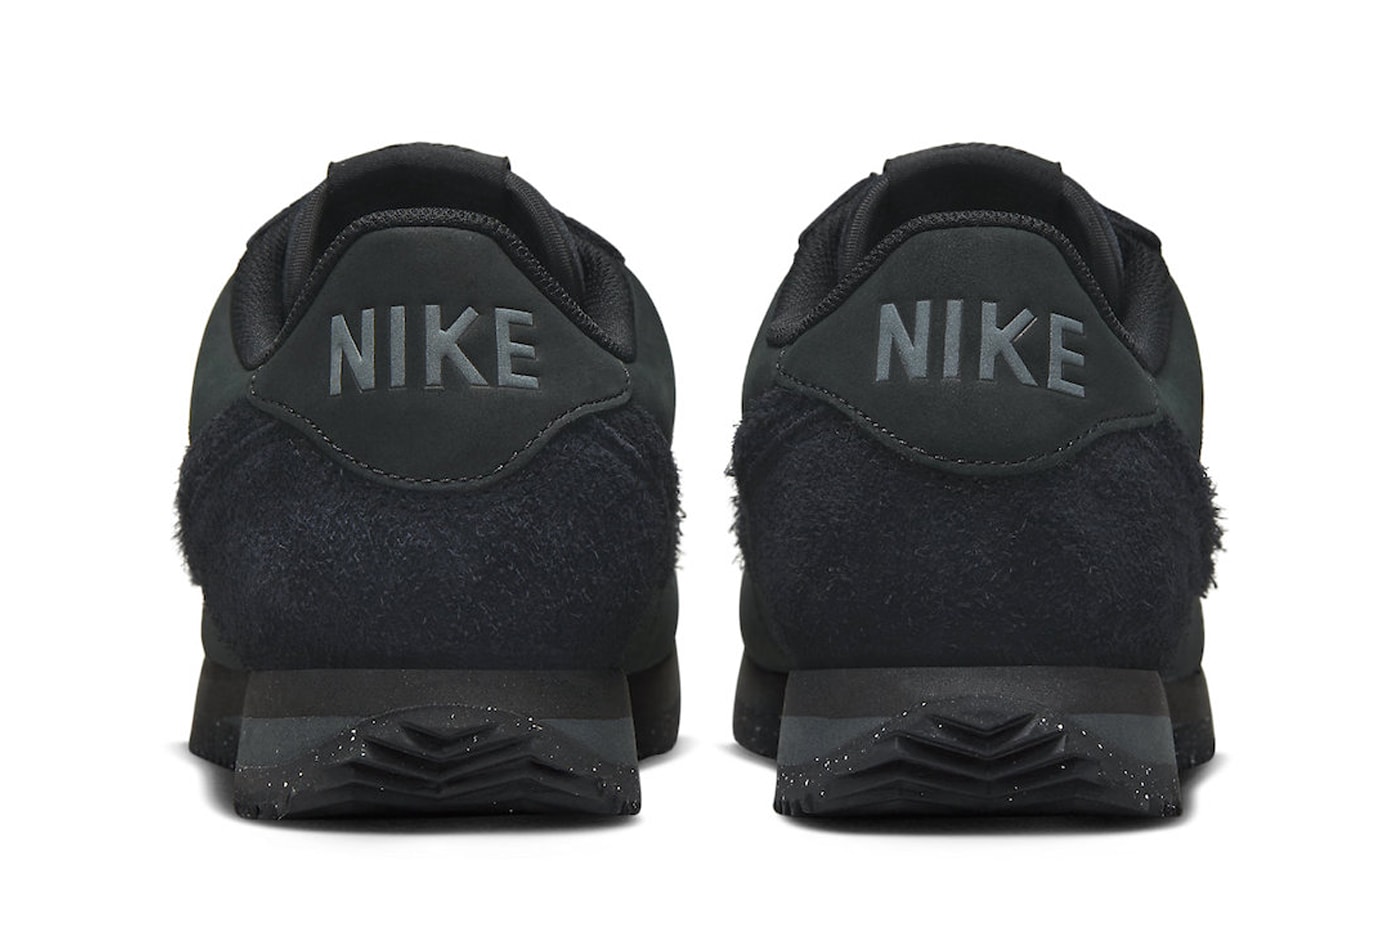 ナイキコルテッツからオールブラック仕様の新色が登場 Nike Cortez PRM Surfaces in "Triple Black" and Shaggy Suede Details release info premium